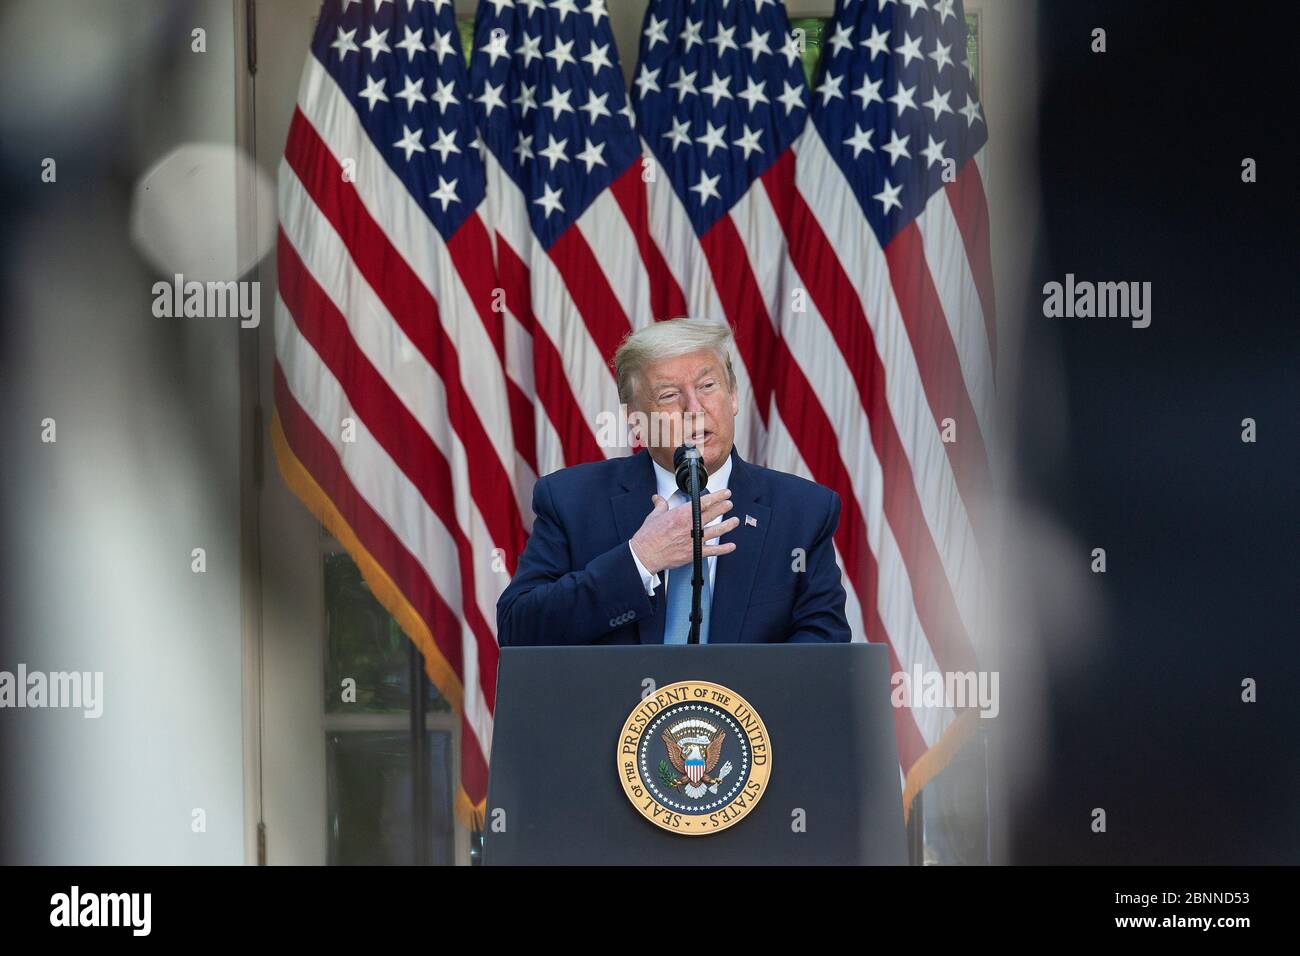 US-Präsident Donald J. Trump hält am Freitag, den 15. Mai 2020, während einer Zeremonie zur Anerkennung des Präsidenten über harte Arbeit, Heroismus und Hoffnung im Rosengarten des Weißen Hauses in Washington, DC, USA, eine Rede. Kredit: Stefani Reynolds/CNP - Nutzung weltweit Stockfoto